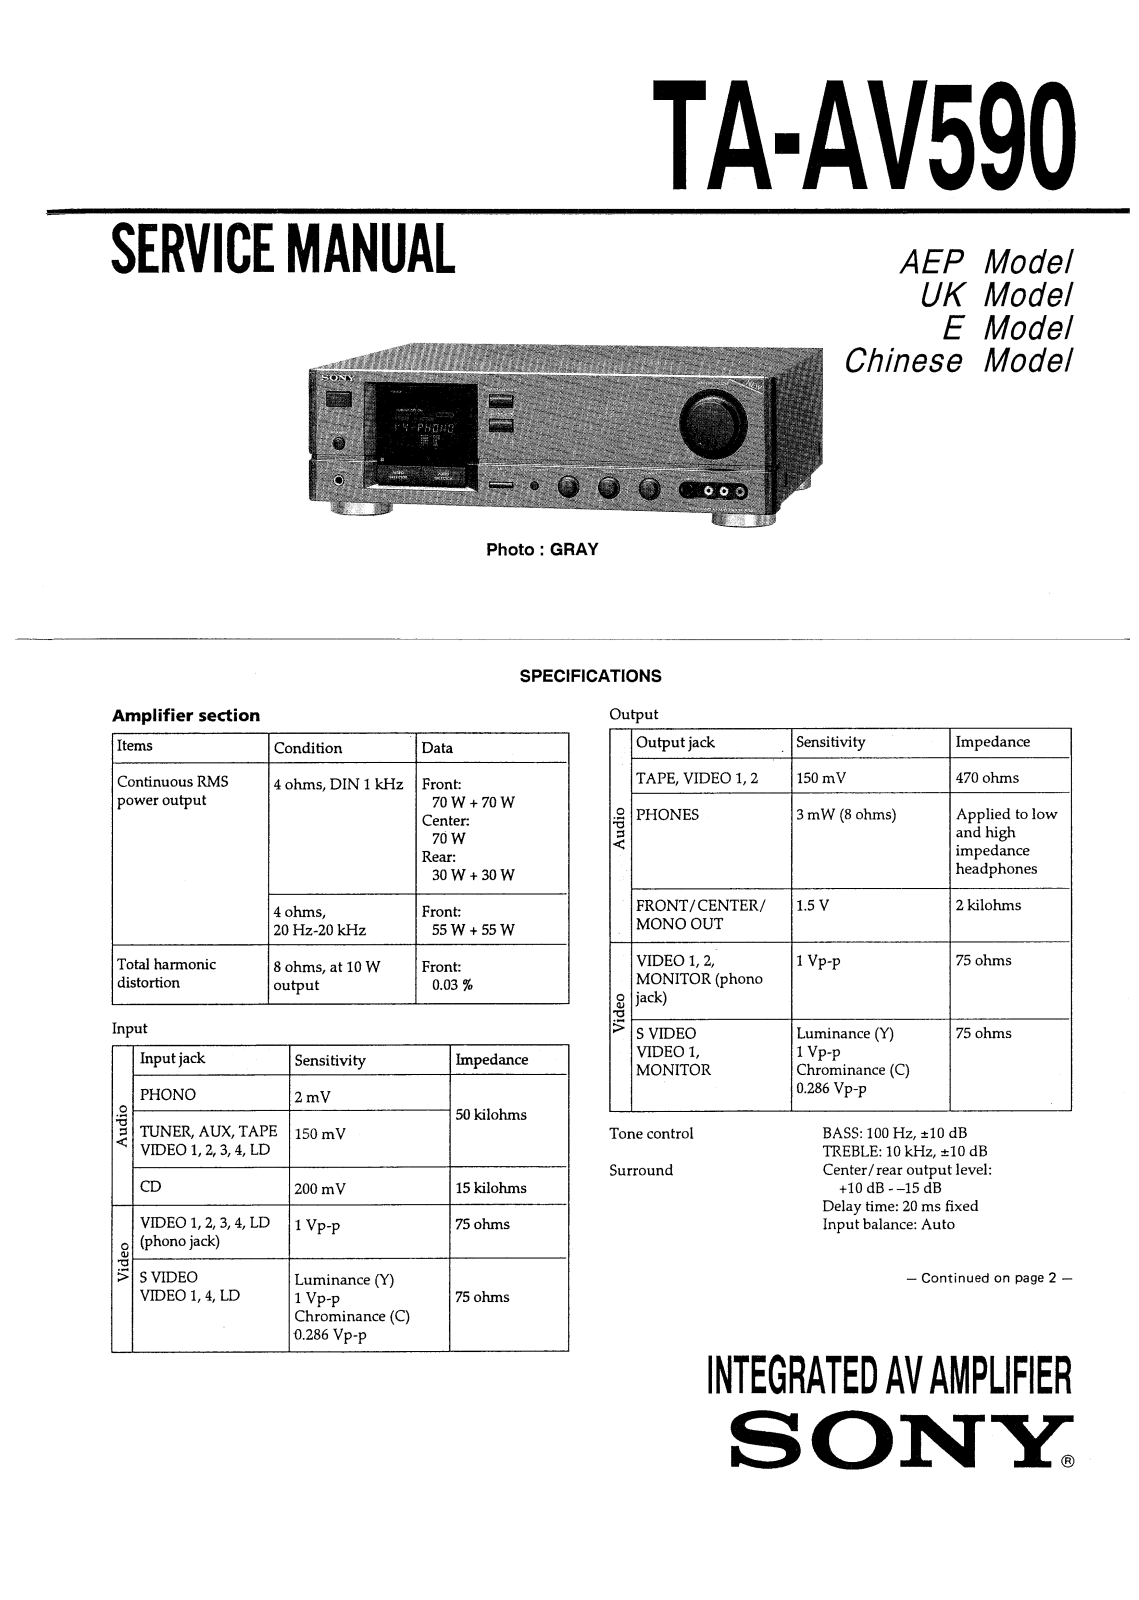 Sony TAAV-590 Service manual